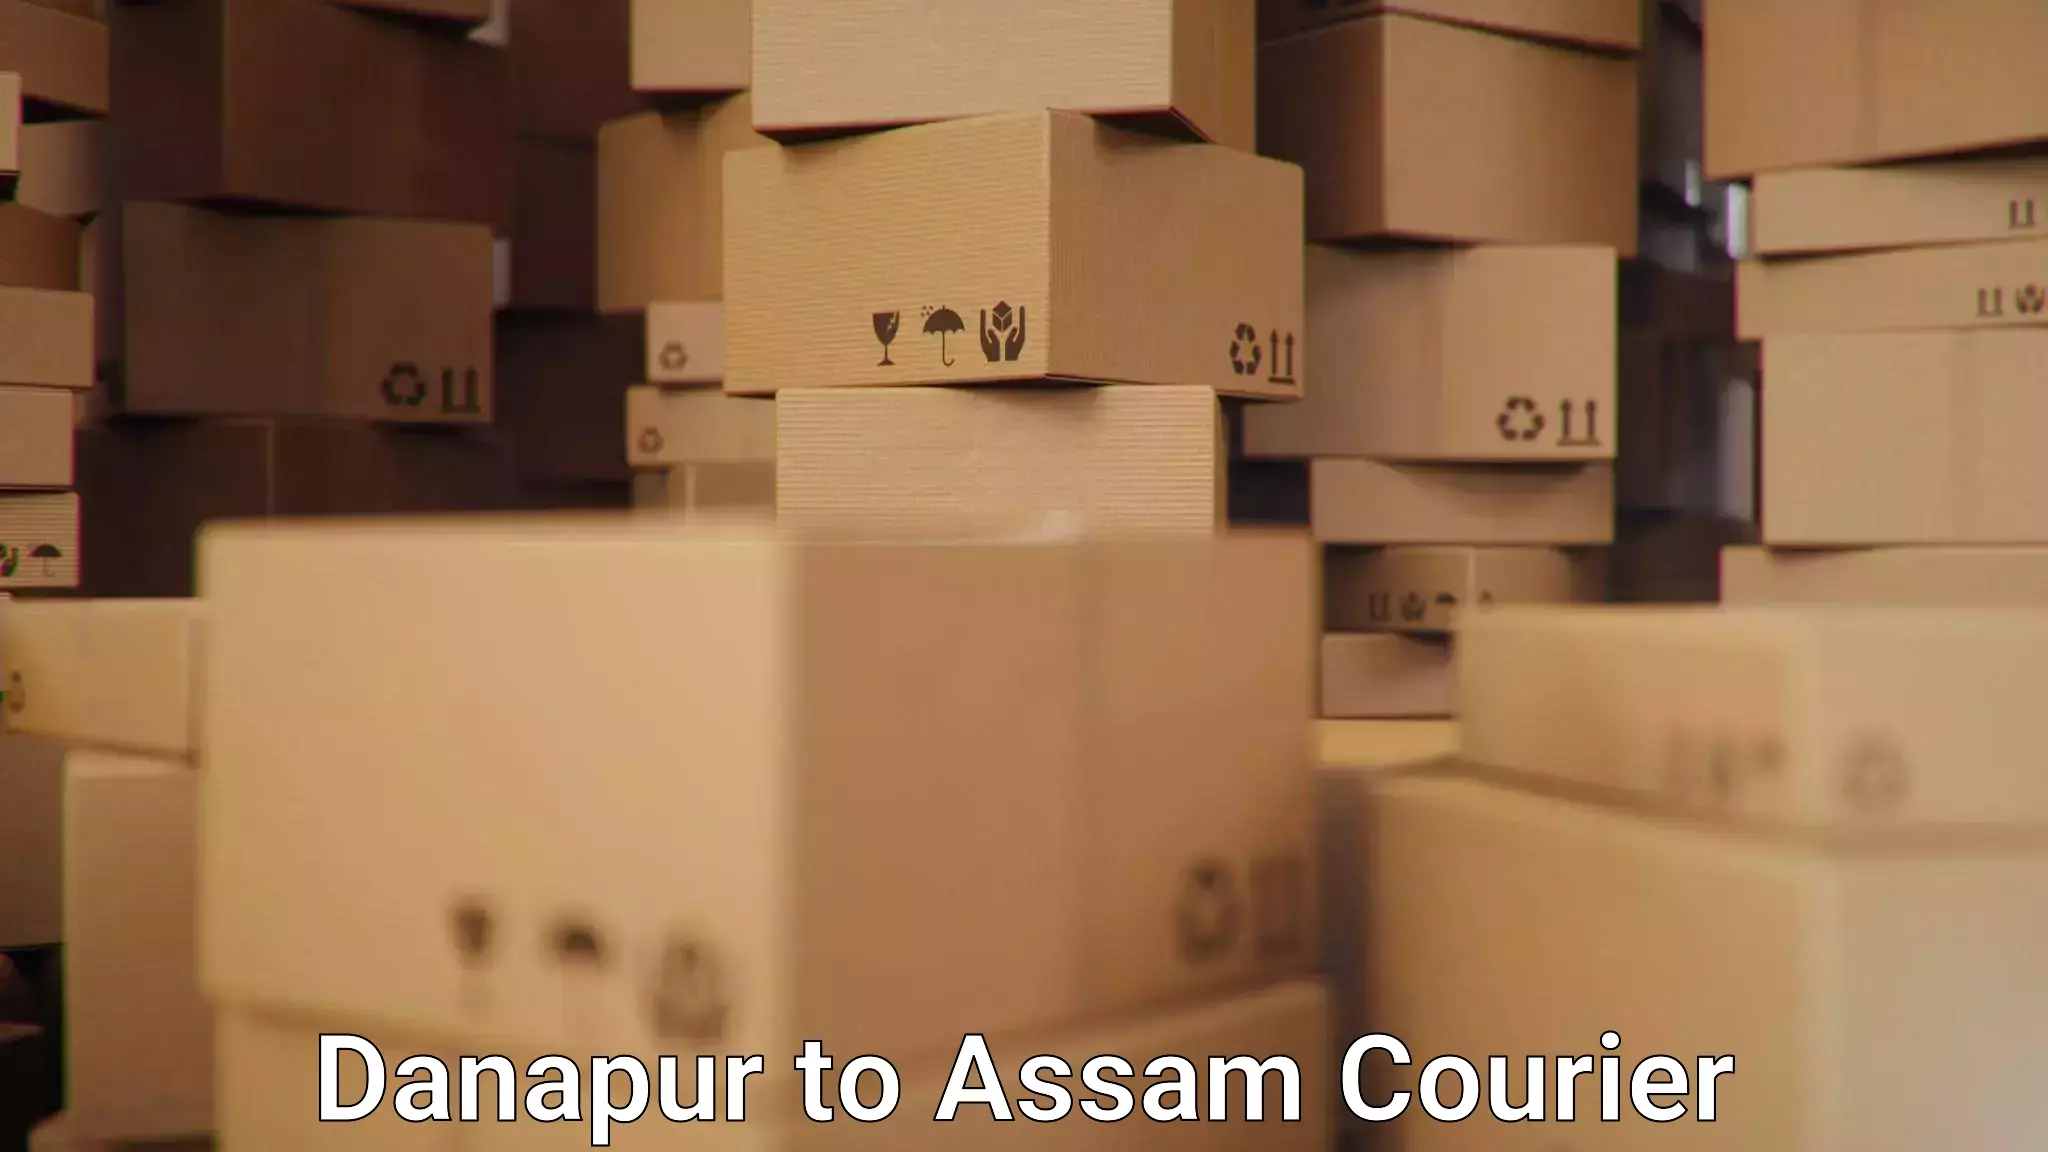 Efficient cargo services Danapur to Assam